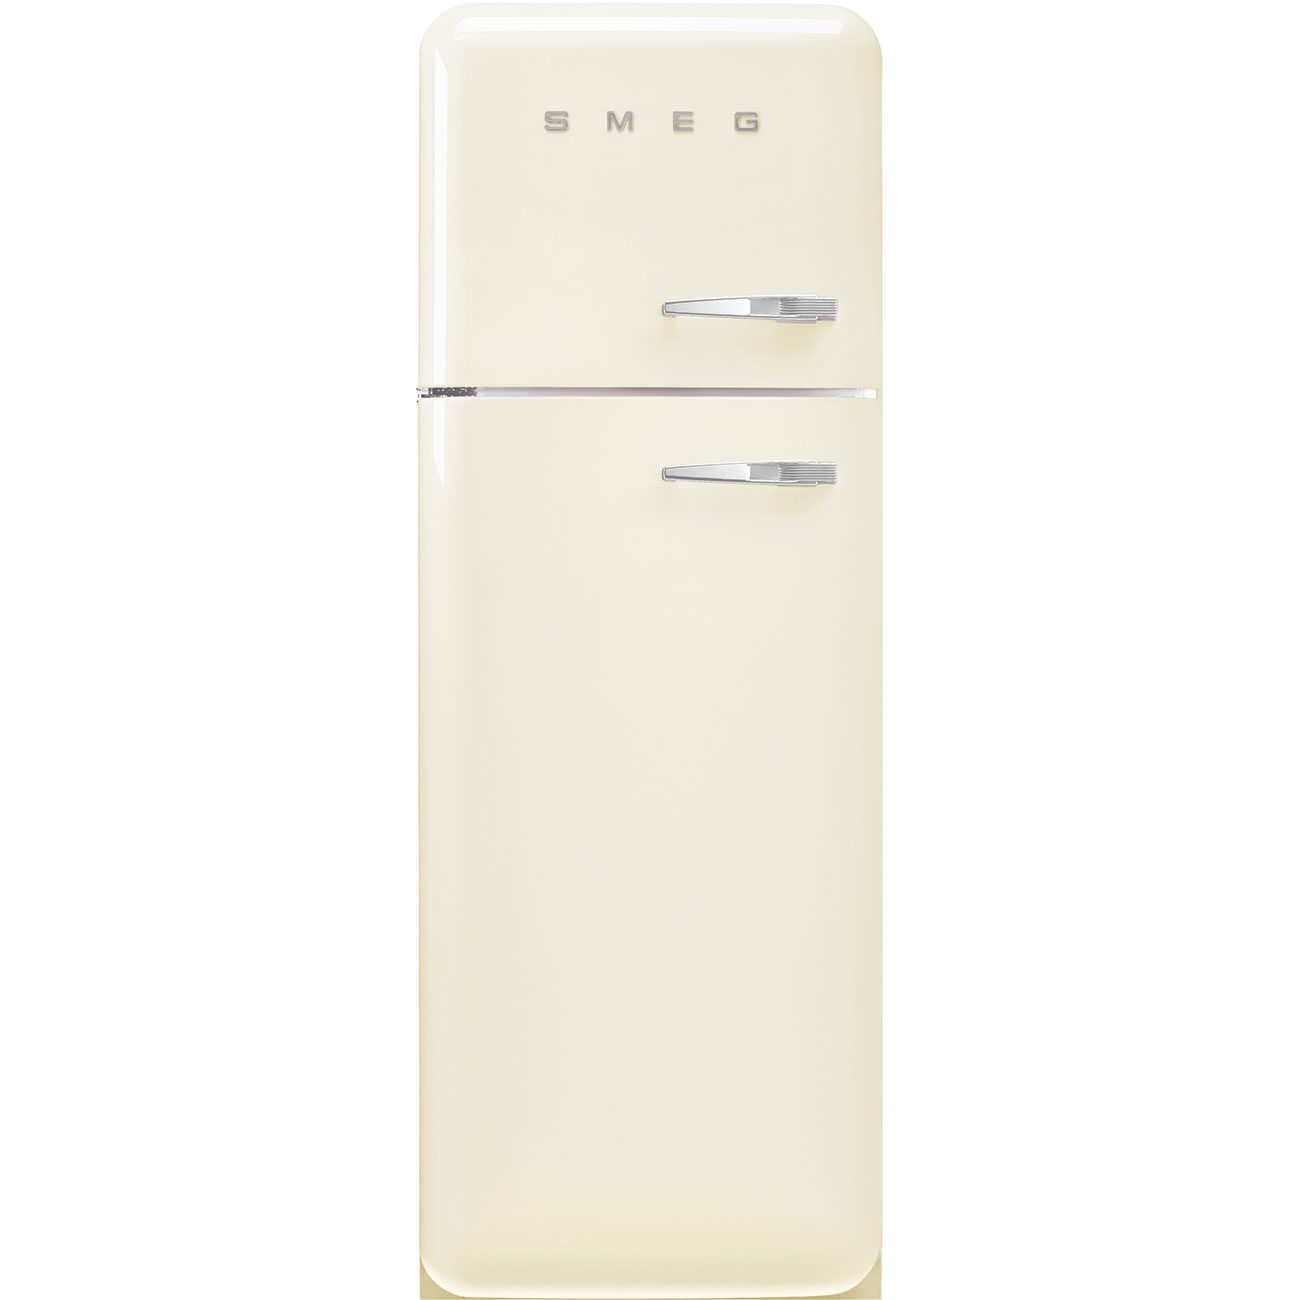 Cream refrigerator - Smeg_1